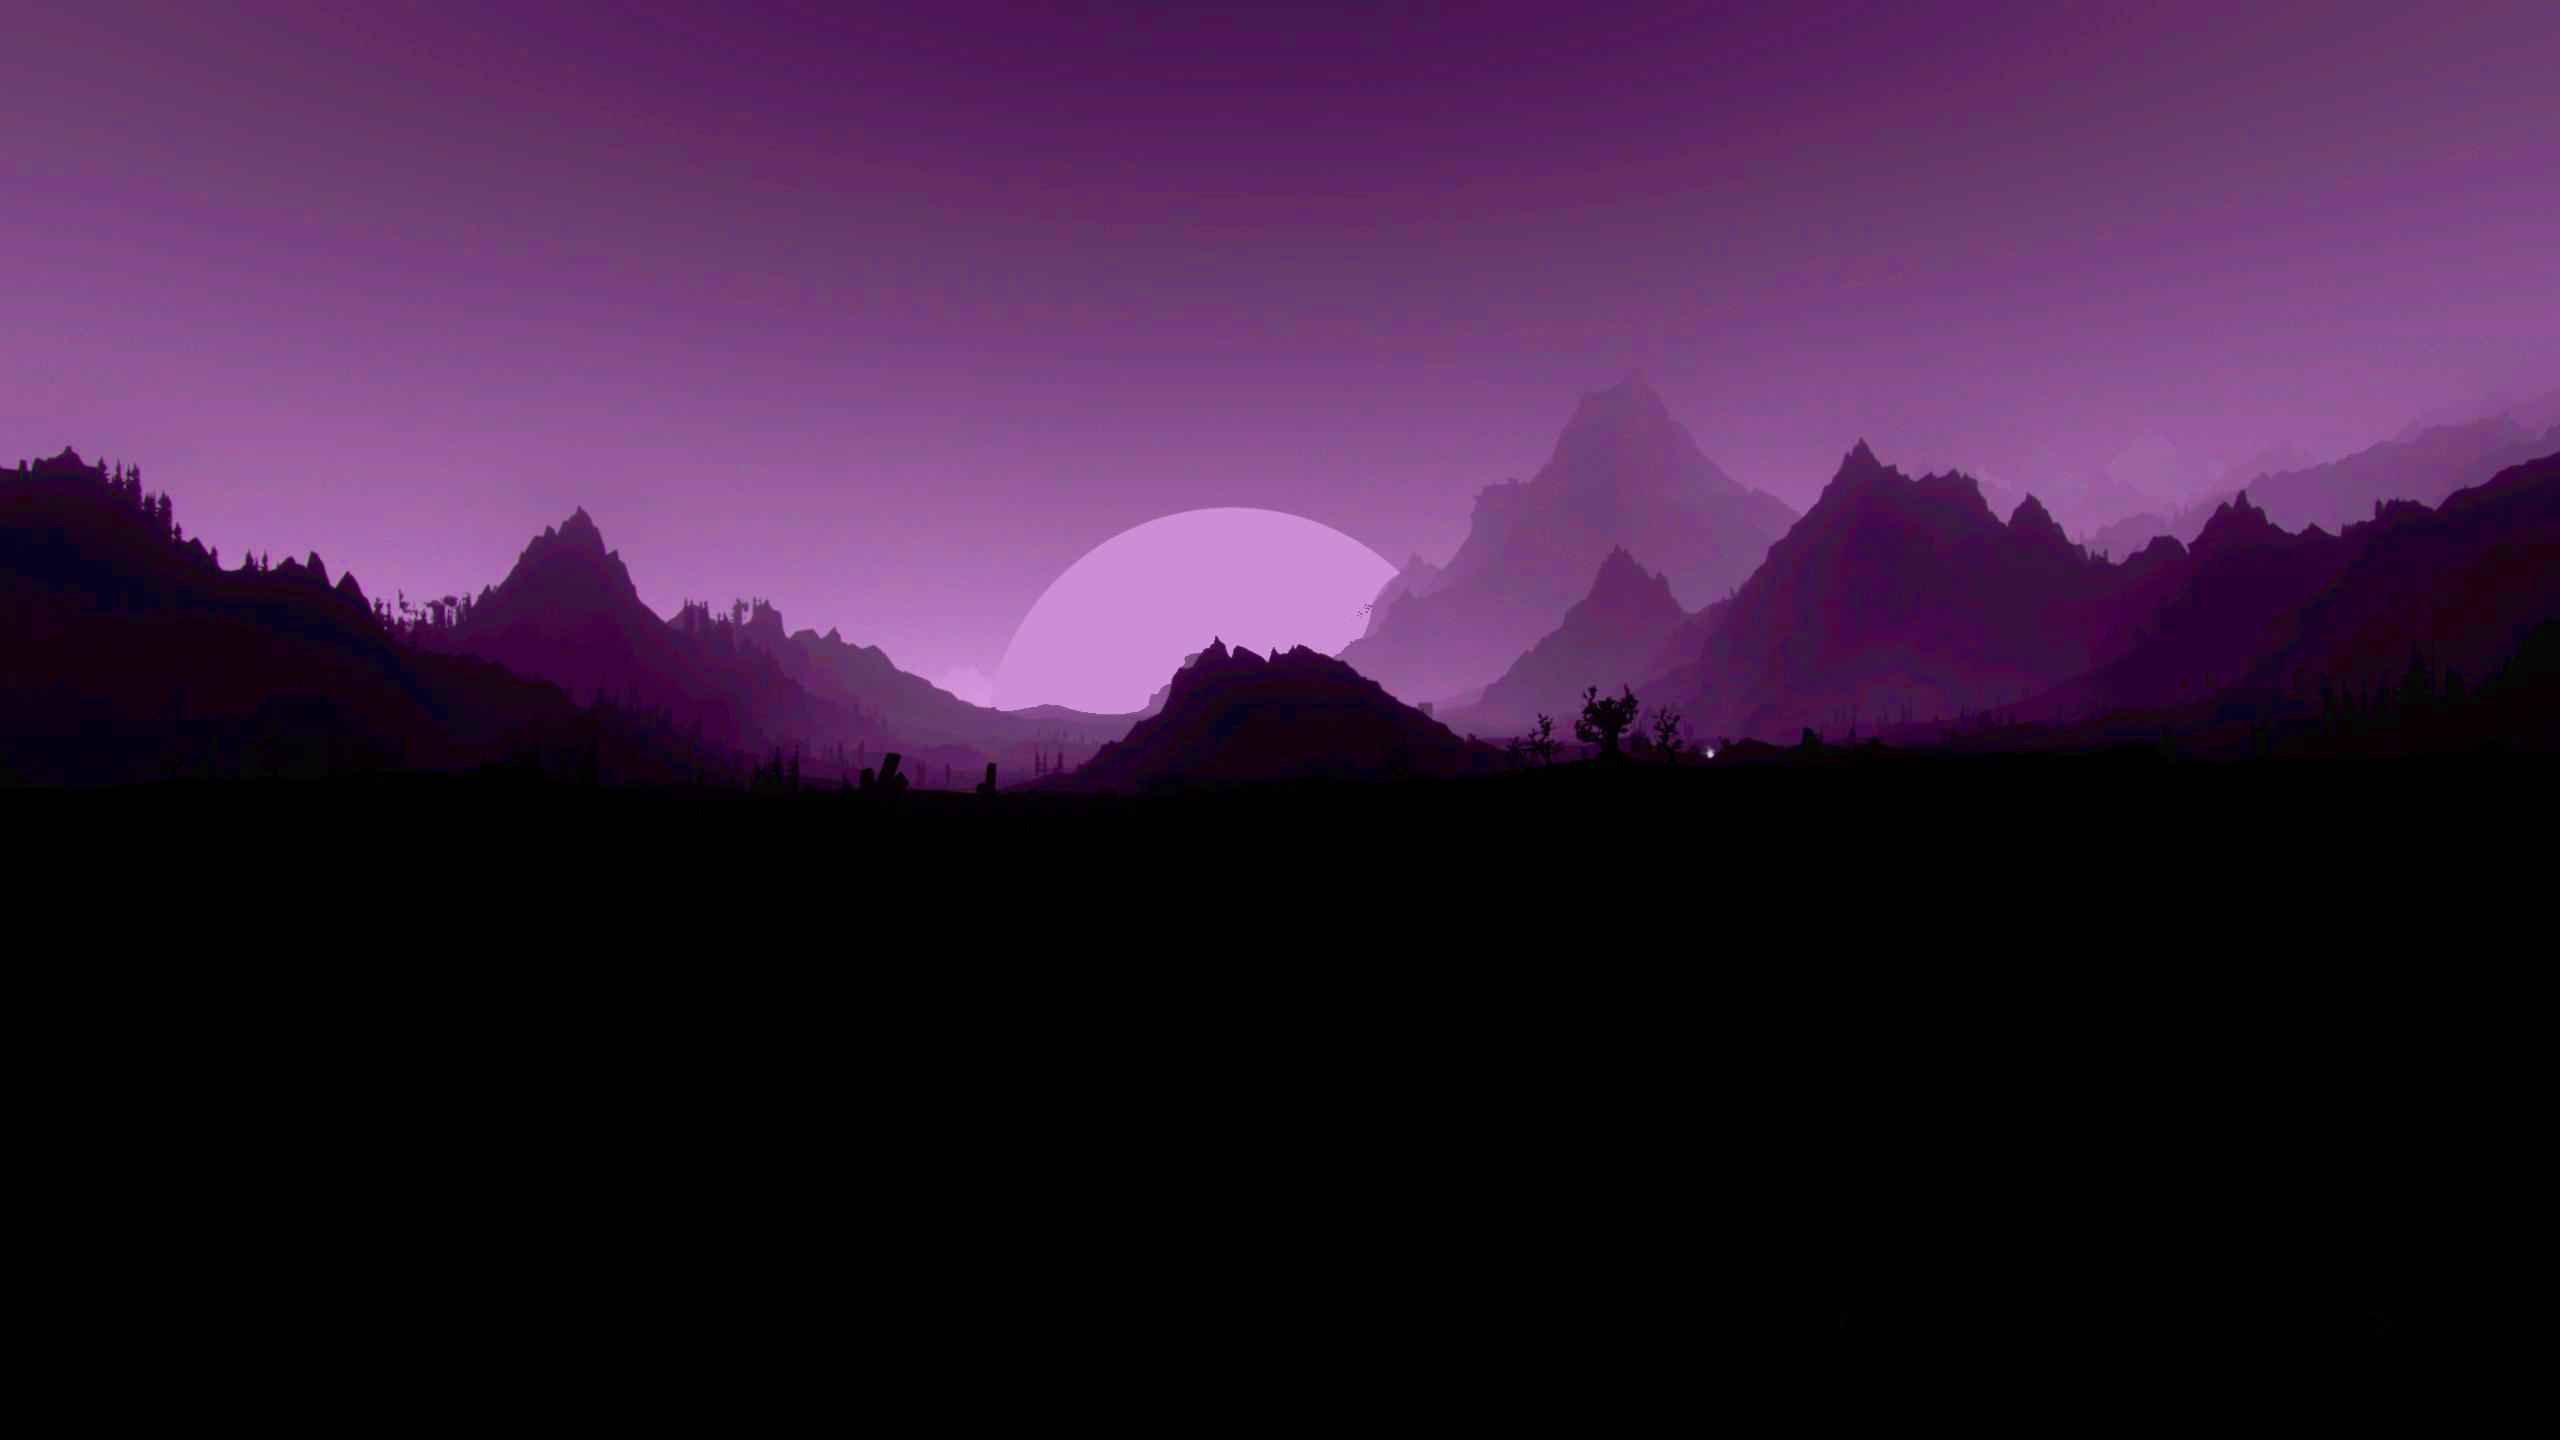  2560x1440 Hintergrundbild 2560x1440. Purple sky[2560x1440]. Full credits to u/ realbadhorse. Dark purple wallpaper, Aesthetic desktop wallpaper, Cute desktop wallpaper